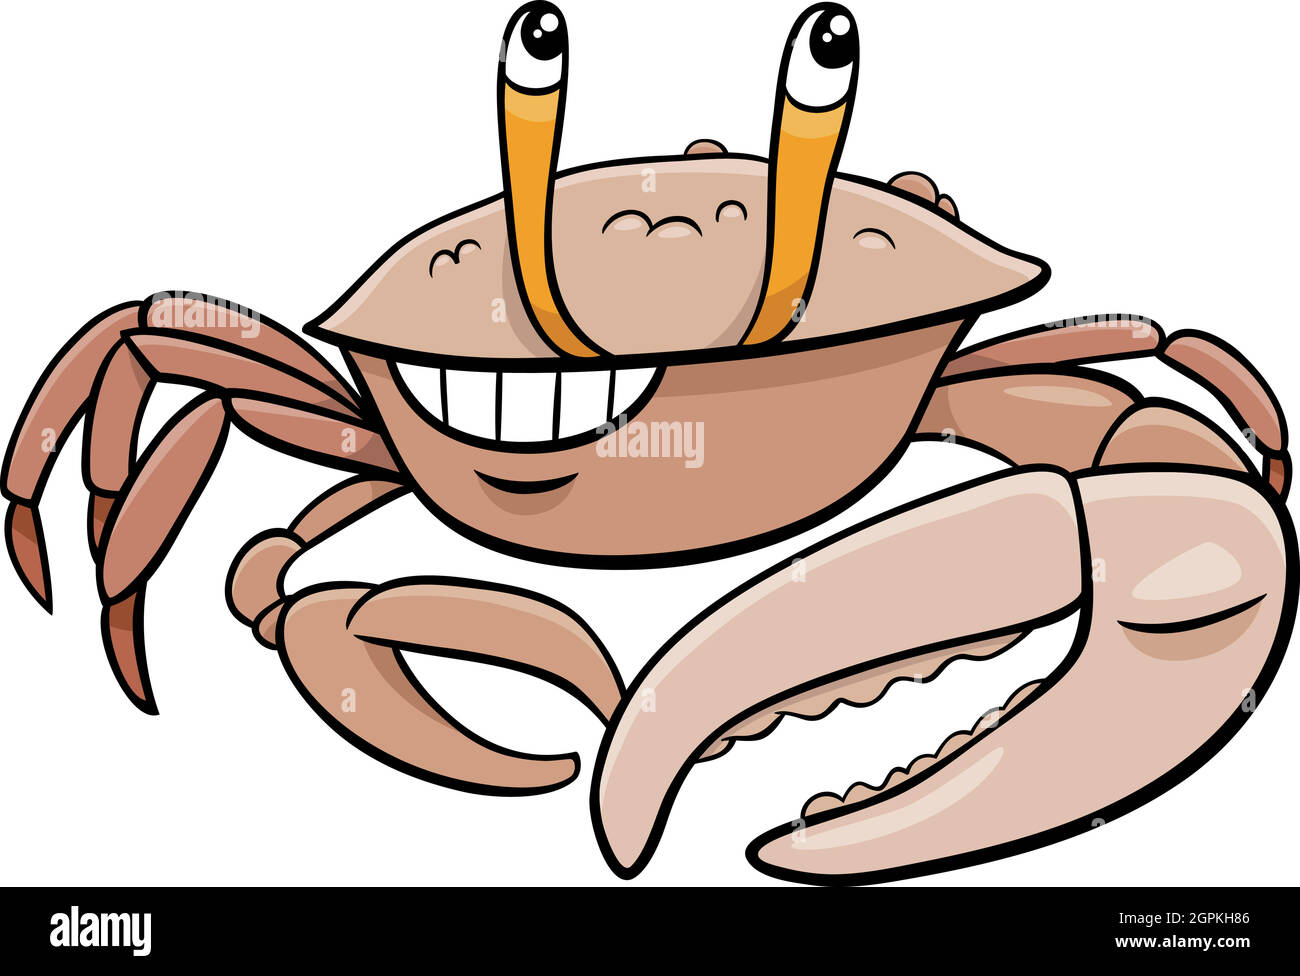 personnage de dessin animé de crabe de violon Illustration de Vecteur